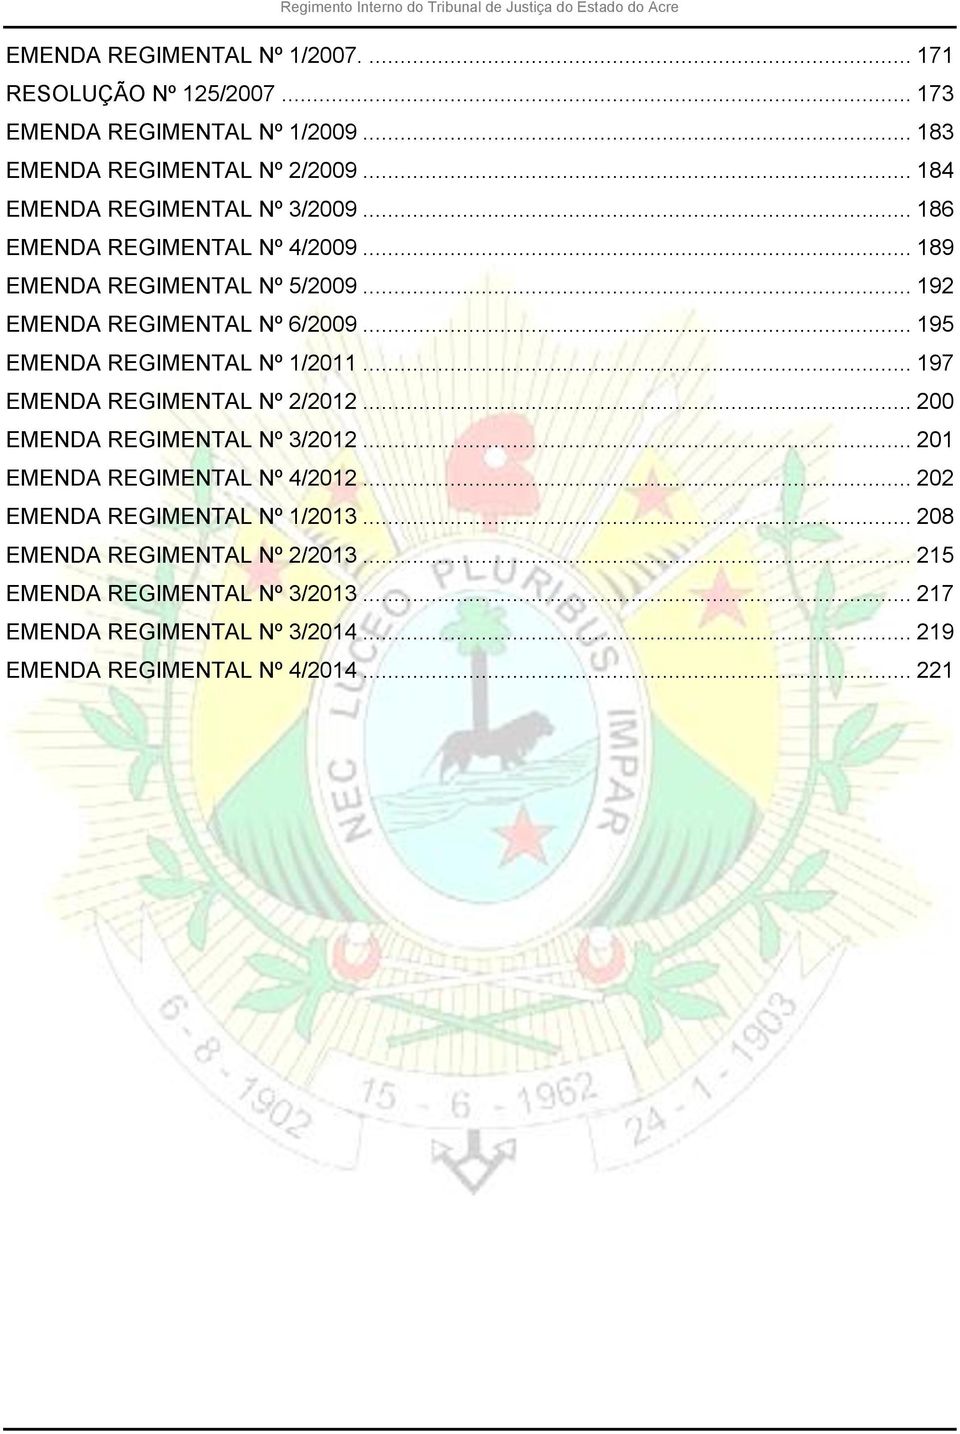 .. 195 EMENDA REGIMENTAL Nº 1/2011... 197 EMENDA REGIMENTAL Nº 2/2012... 200 EMENDA REGIMENTAL Nº 3/2012... 201 EMENDA REGIMENTAL Nº 4/2012.